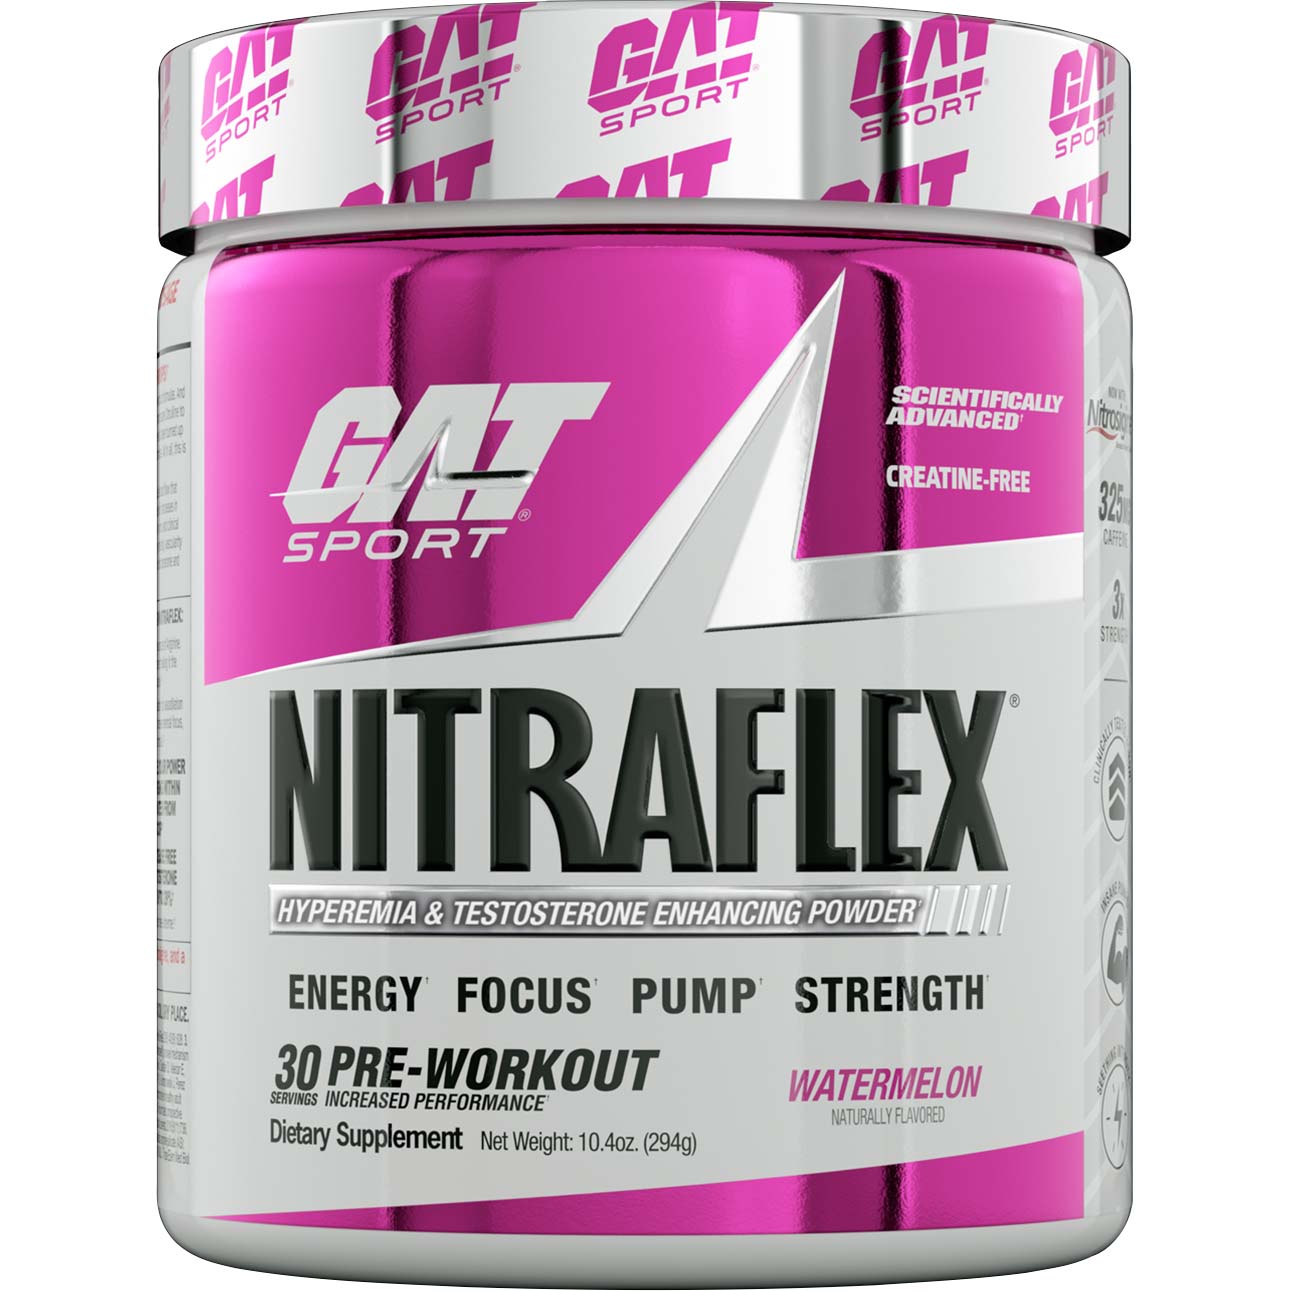 Gat Sport Nitraflex Testosterone Boosting Powder 30 Watermelon